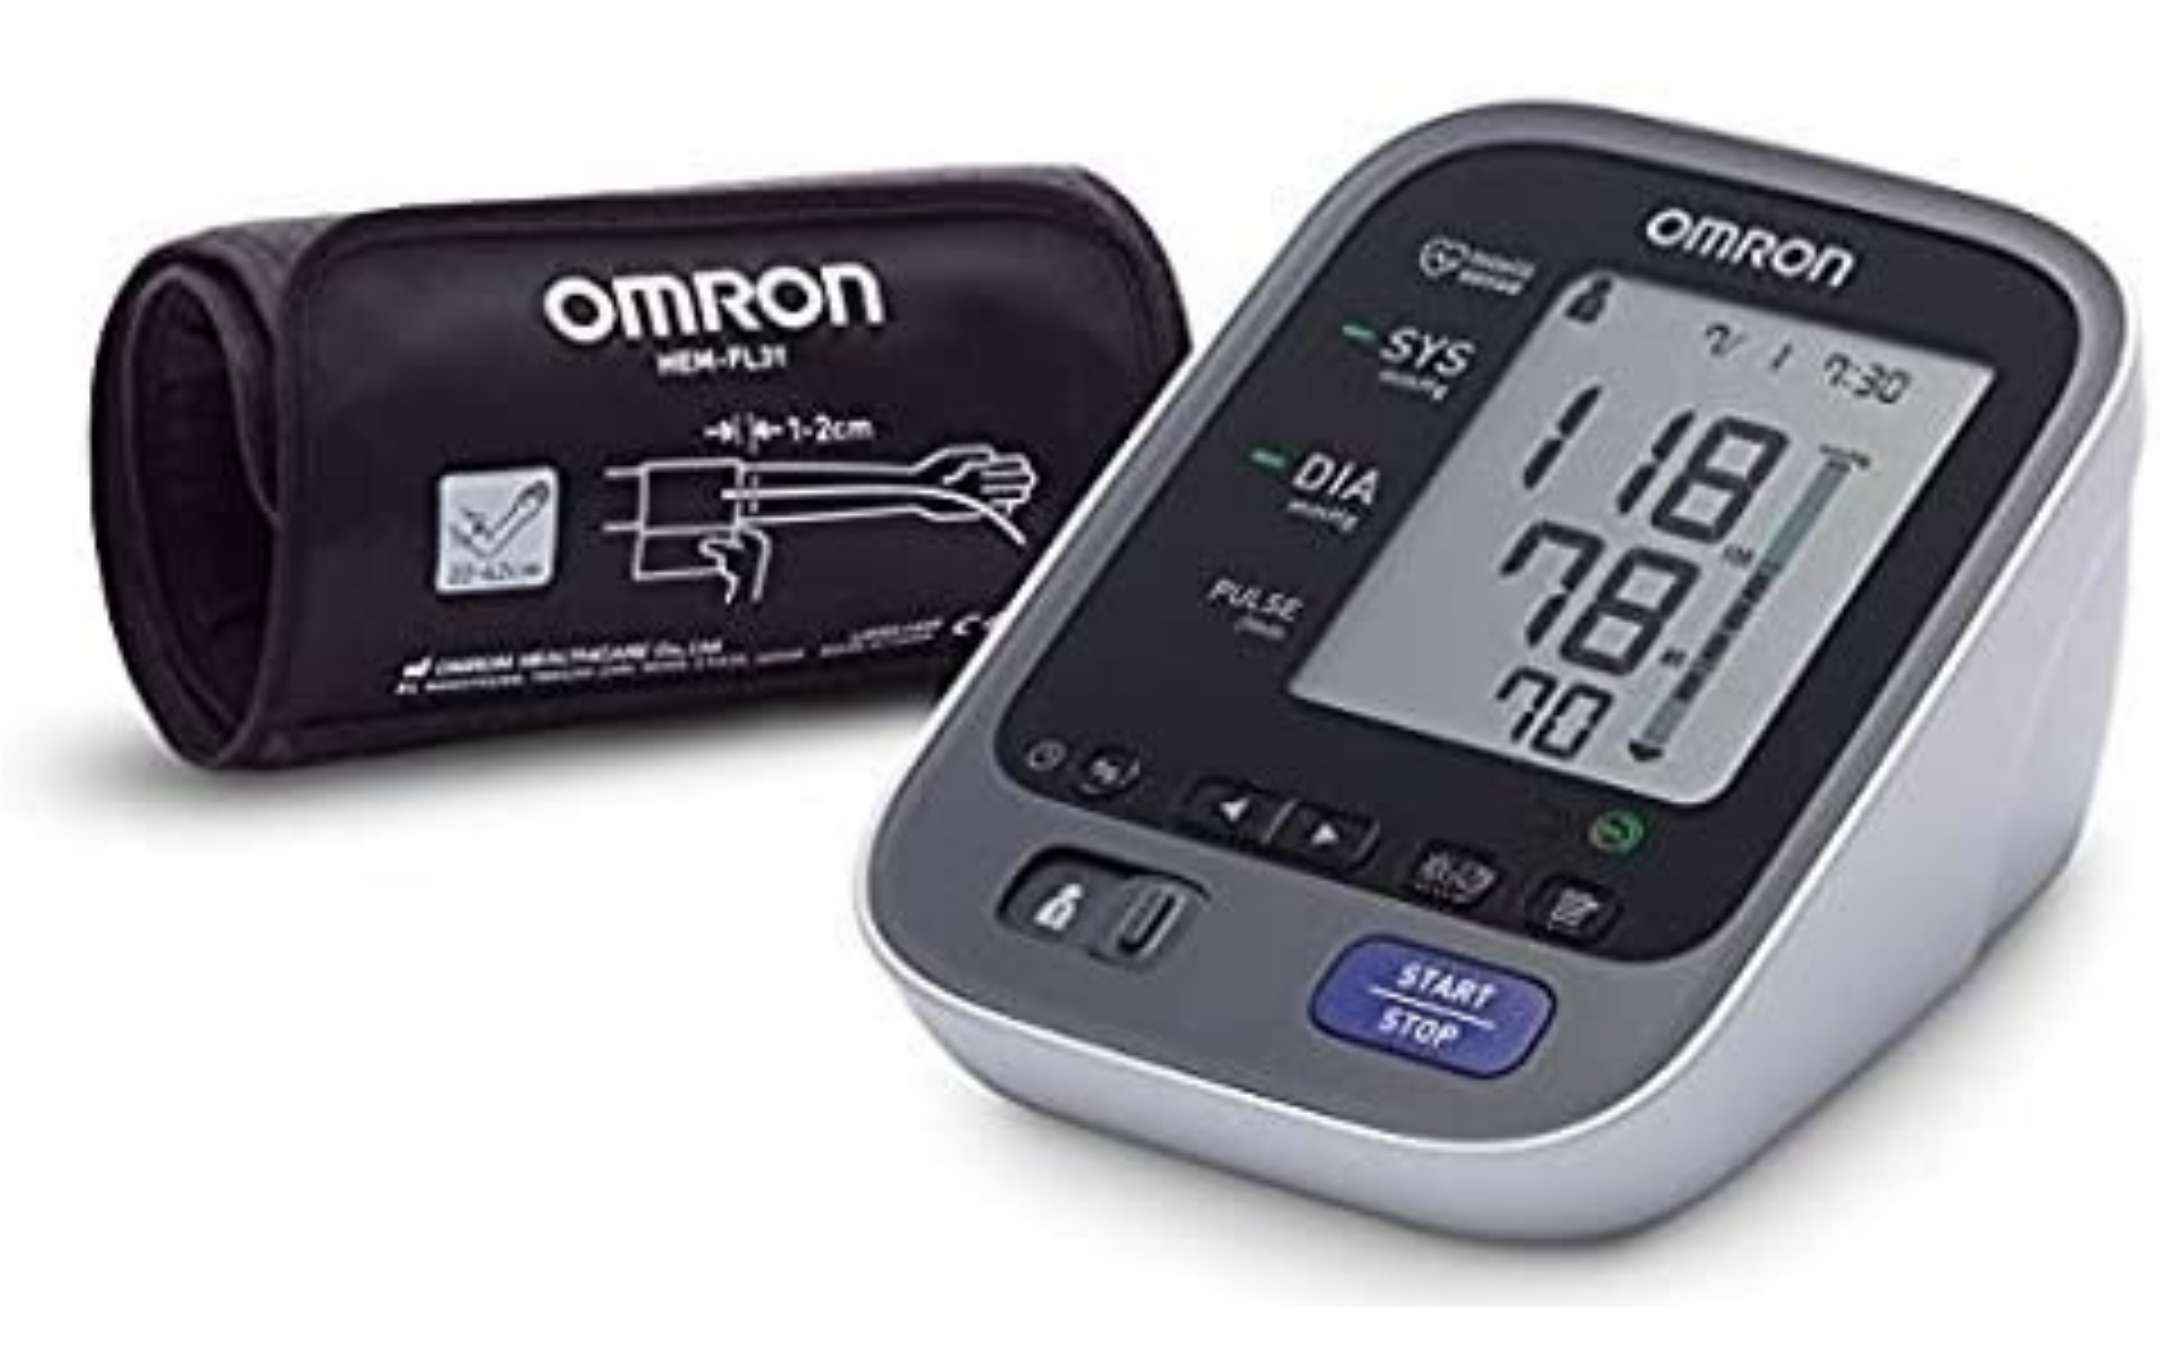 Misuratore di pressione Omron con Bluetooth a soli 49,99€